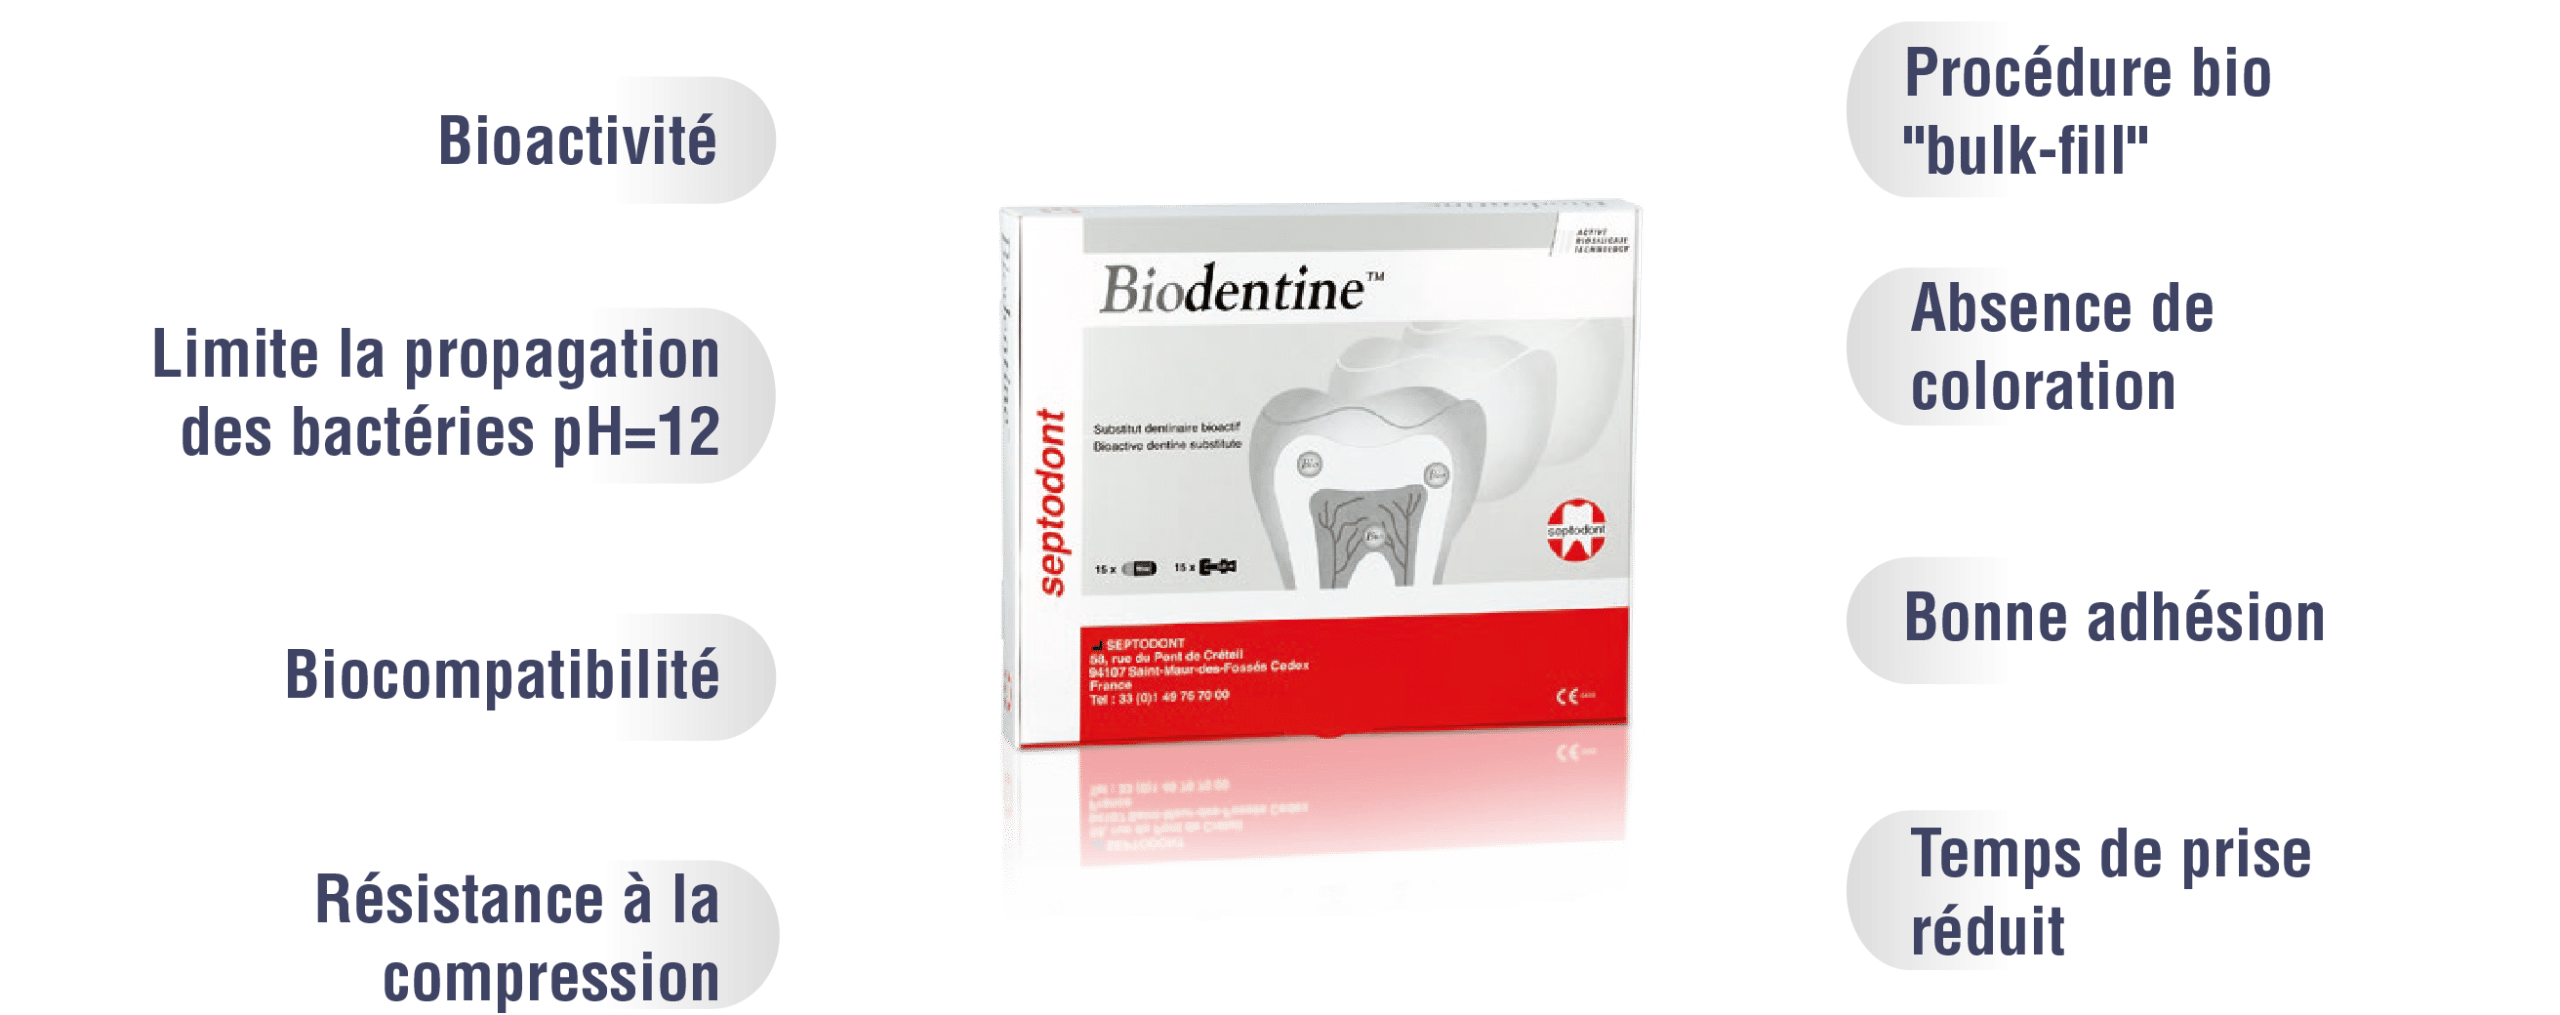 Avantages de Biodentine (procédure ART)